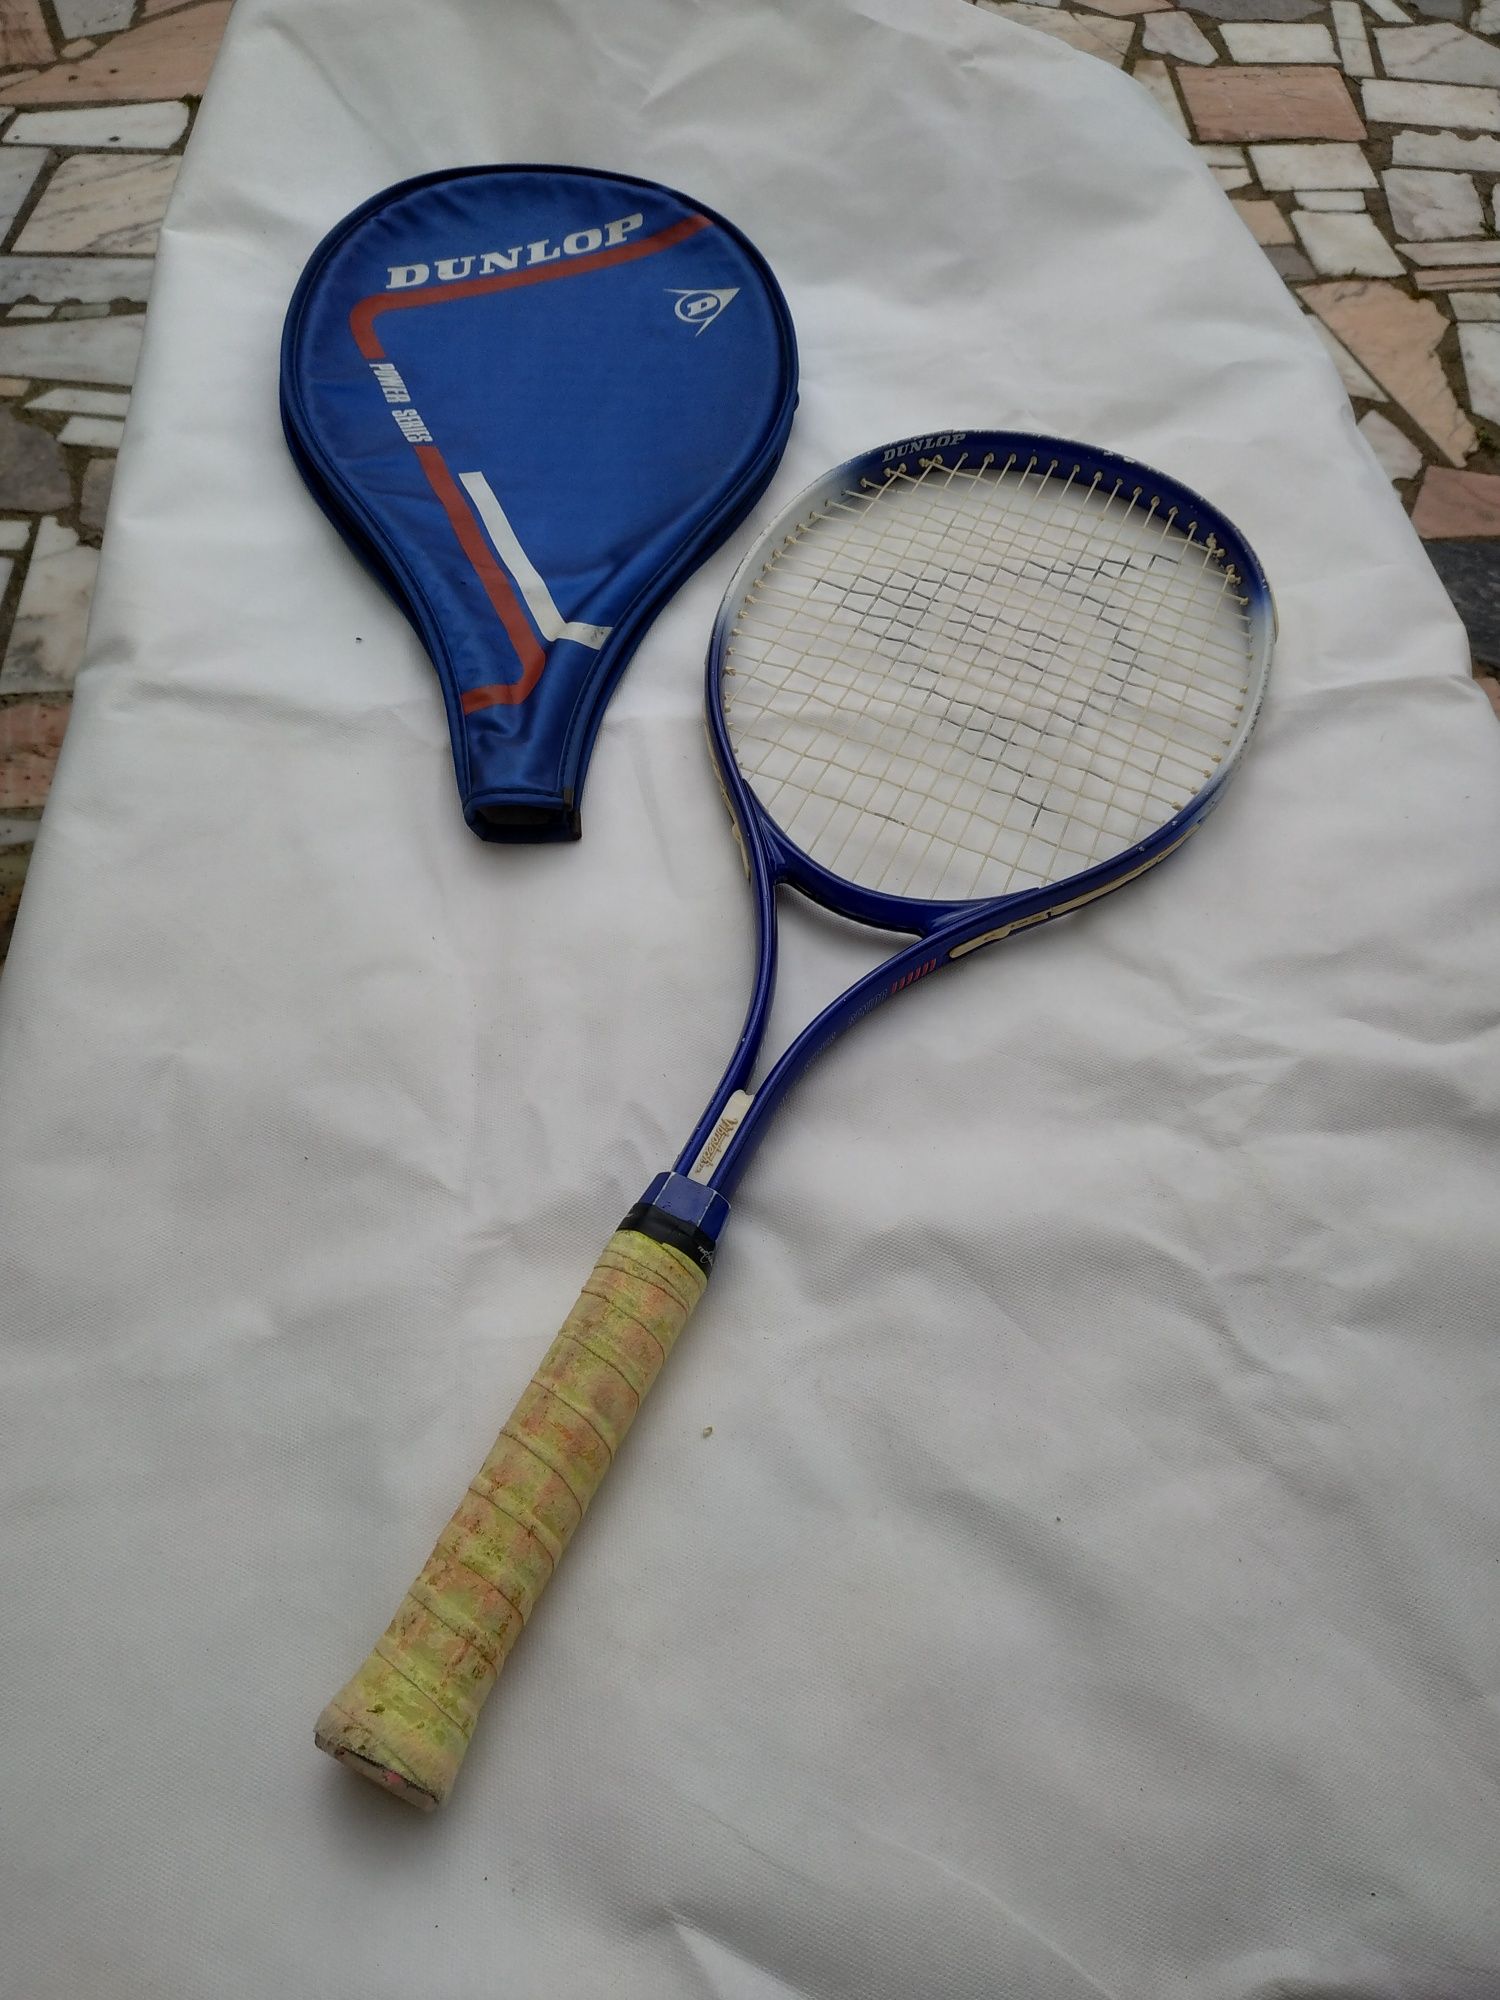 Raquete de Tenis com capa de proteção.